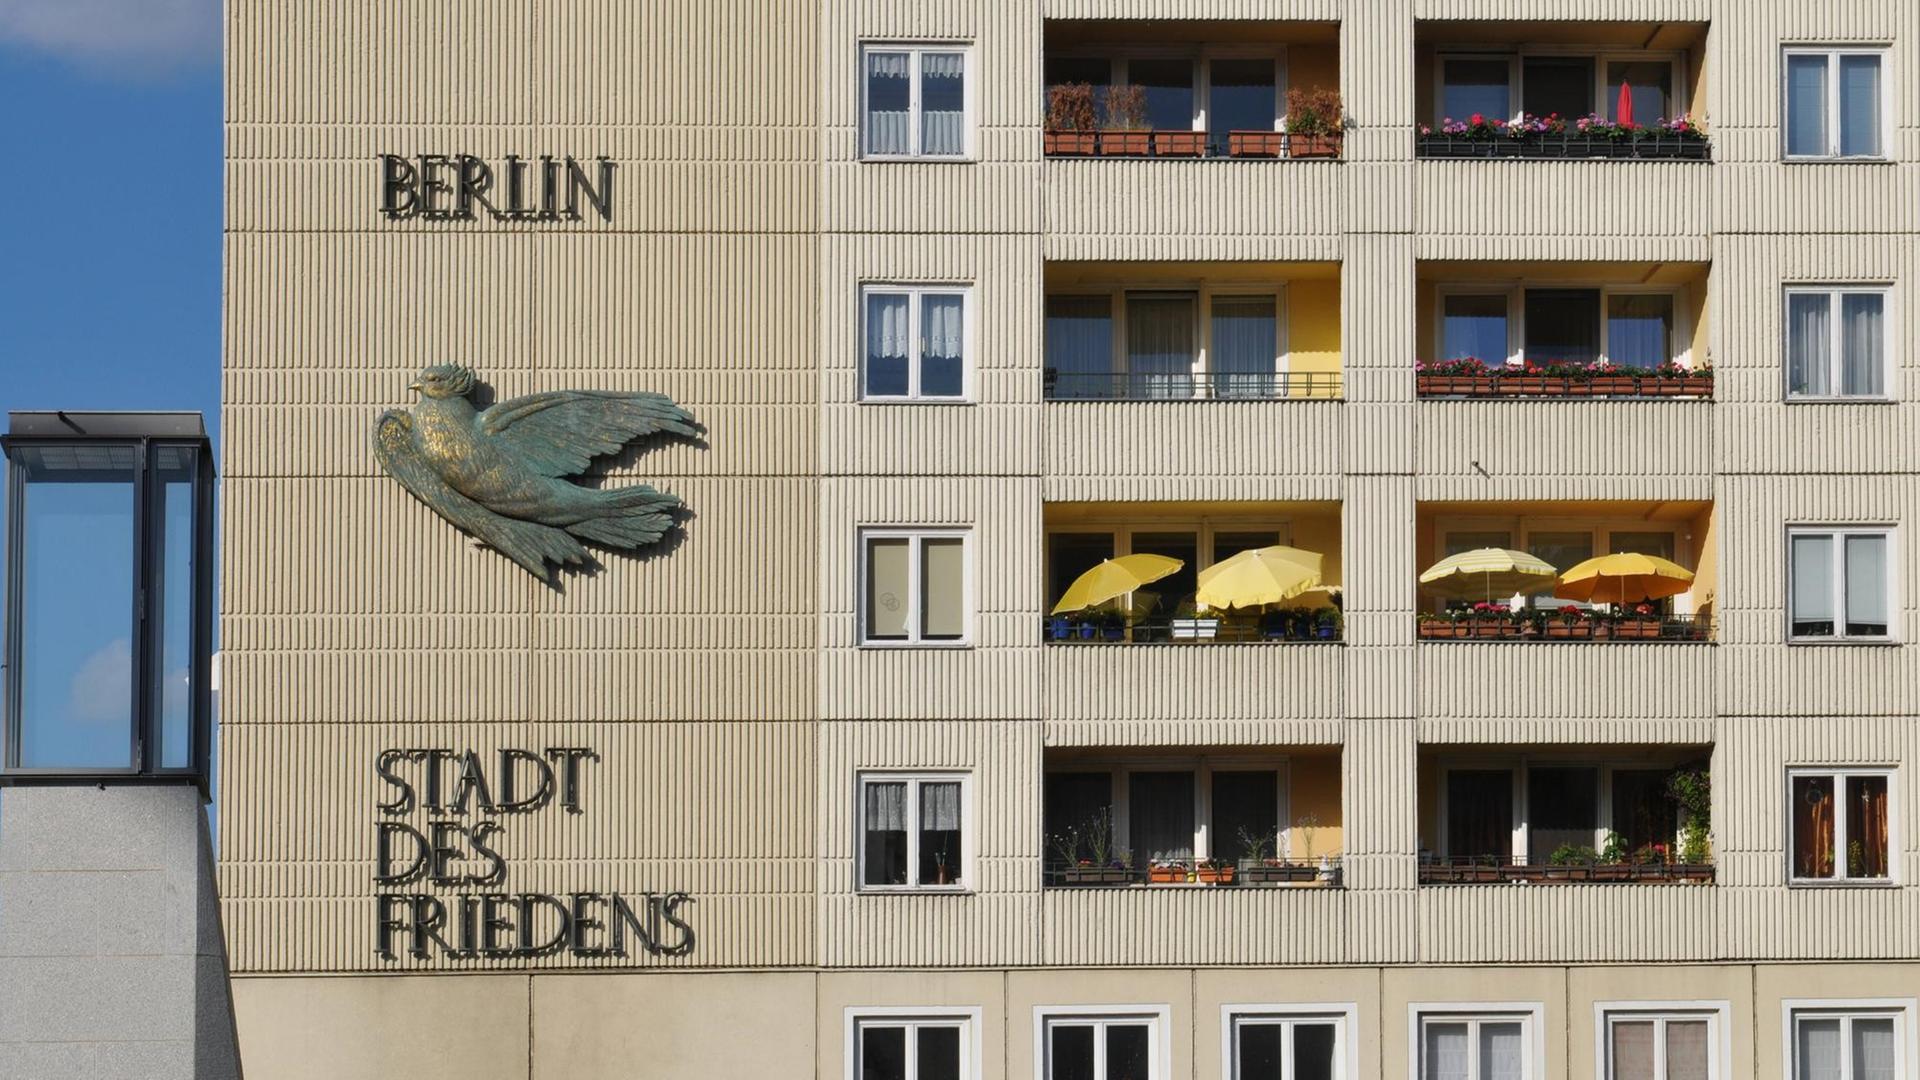 Plattenbau mit der Aufschrift "Berlin Stadt des Friedens" am Spreeufer, Nikolaiviertel, Berlin, Deutschland